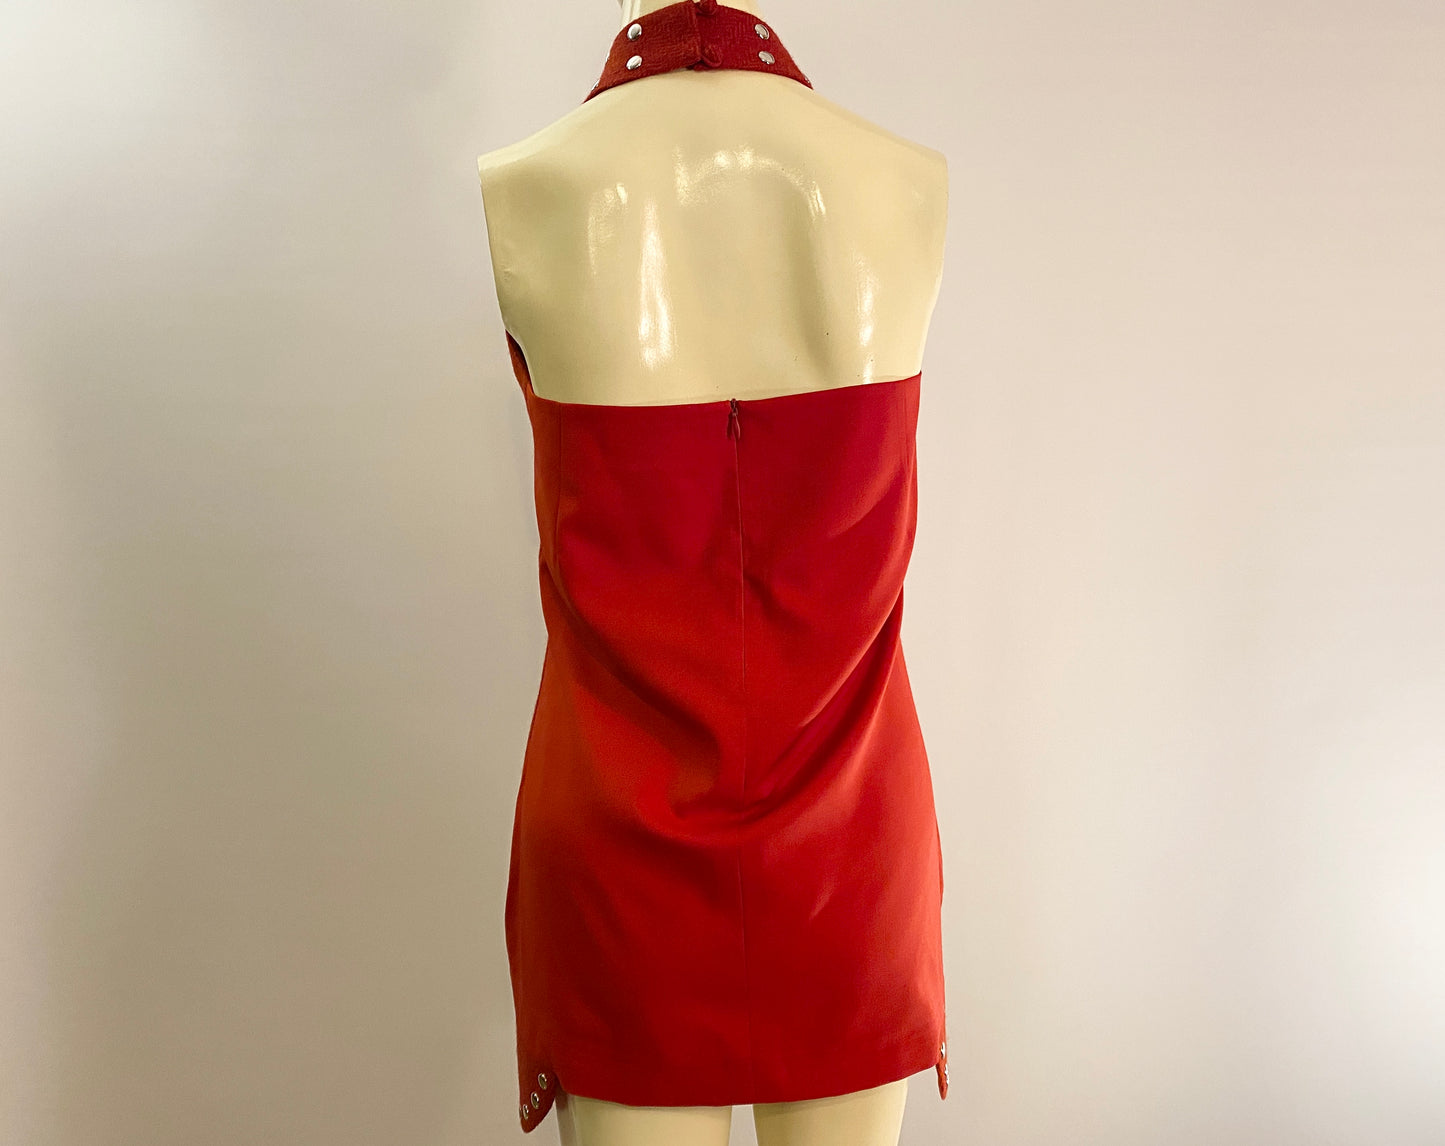 Impatiens Halter Top Dress Red/Org Herringbone Harris Tweed